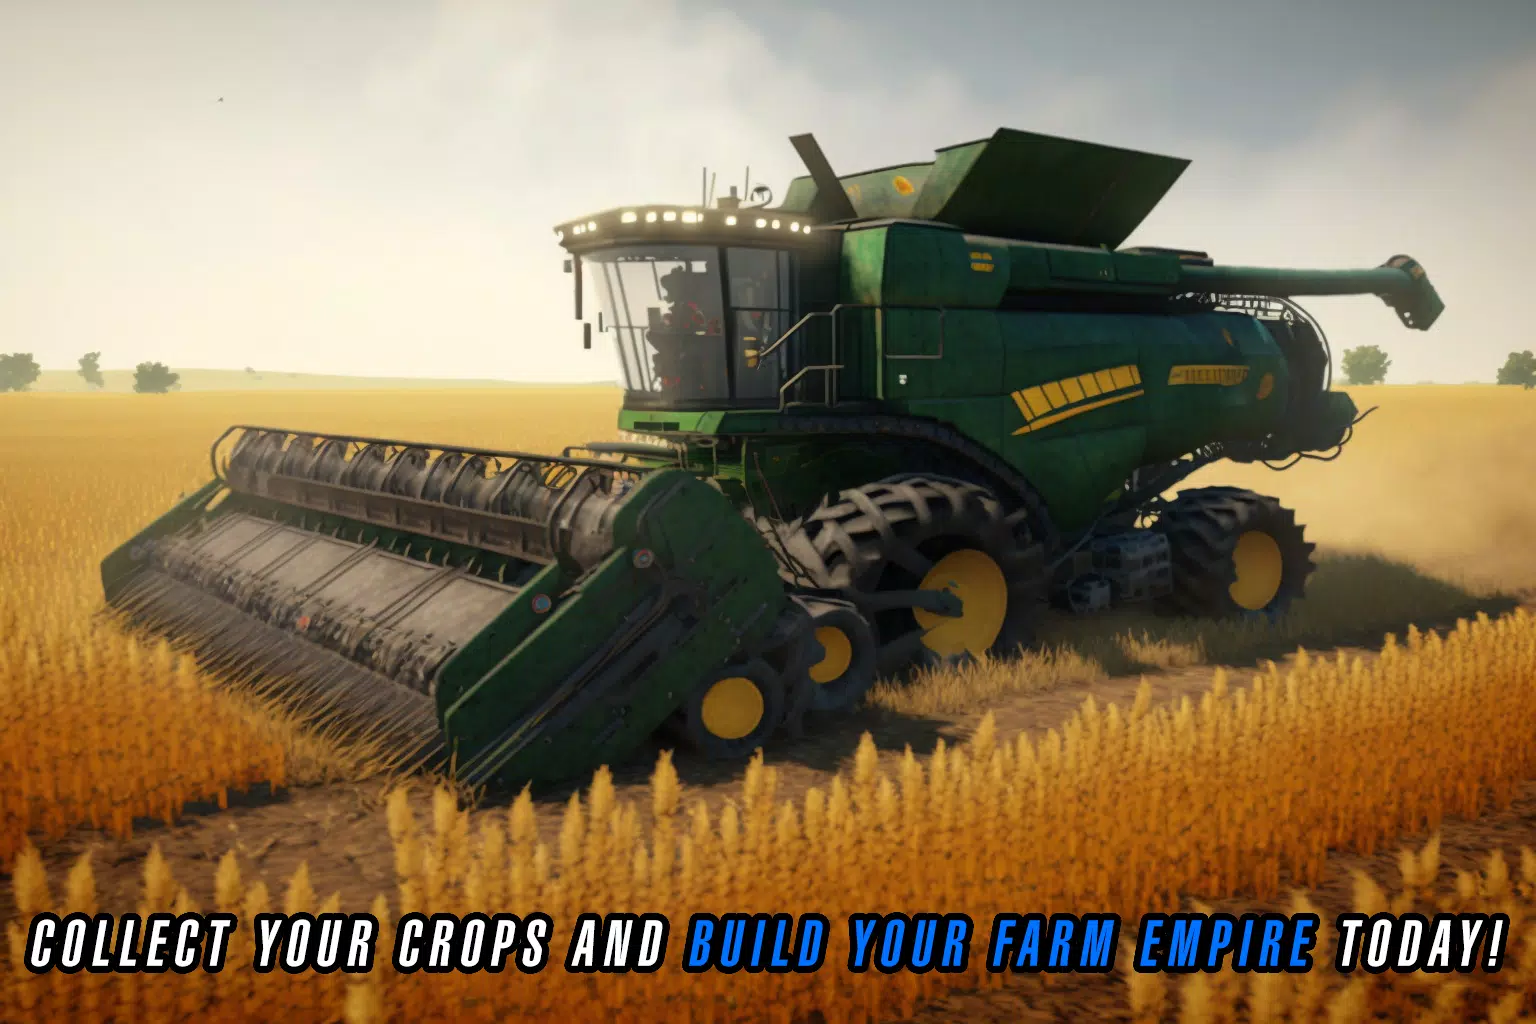 farming simulator 23!🚚#farming #farmingsimulator22 #farmingsimulator